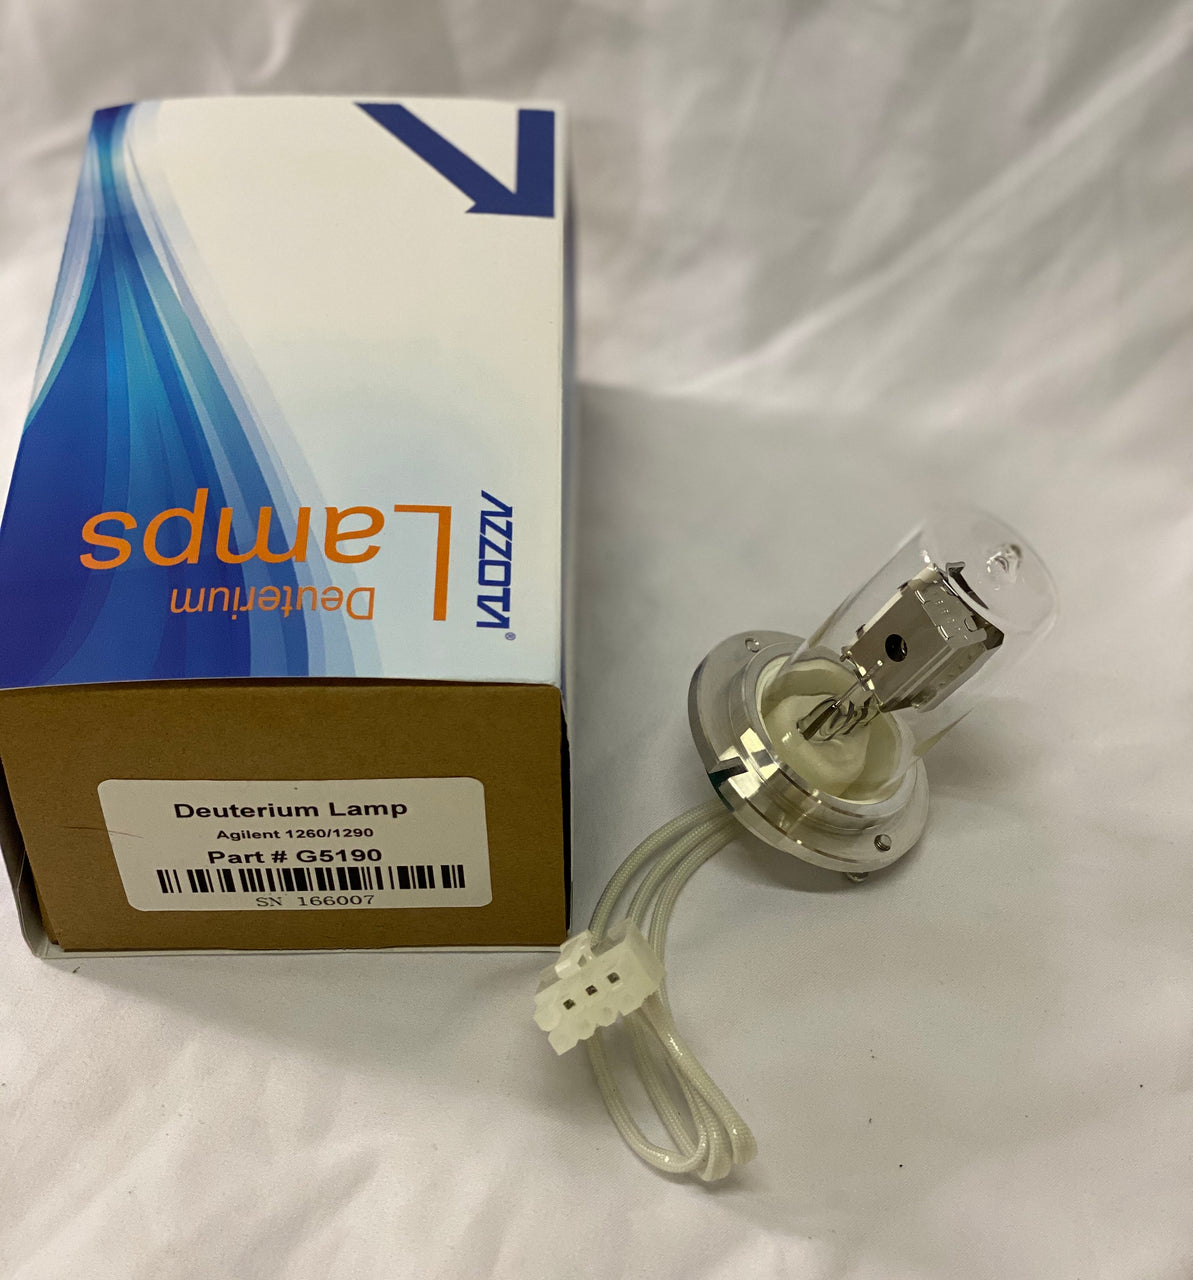 Azzota® Deuterium Lamp, Equivalent to Agilent PN# 5190-0917